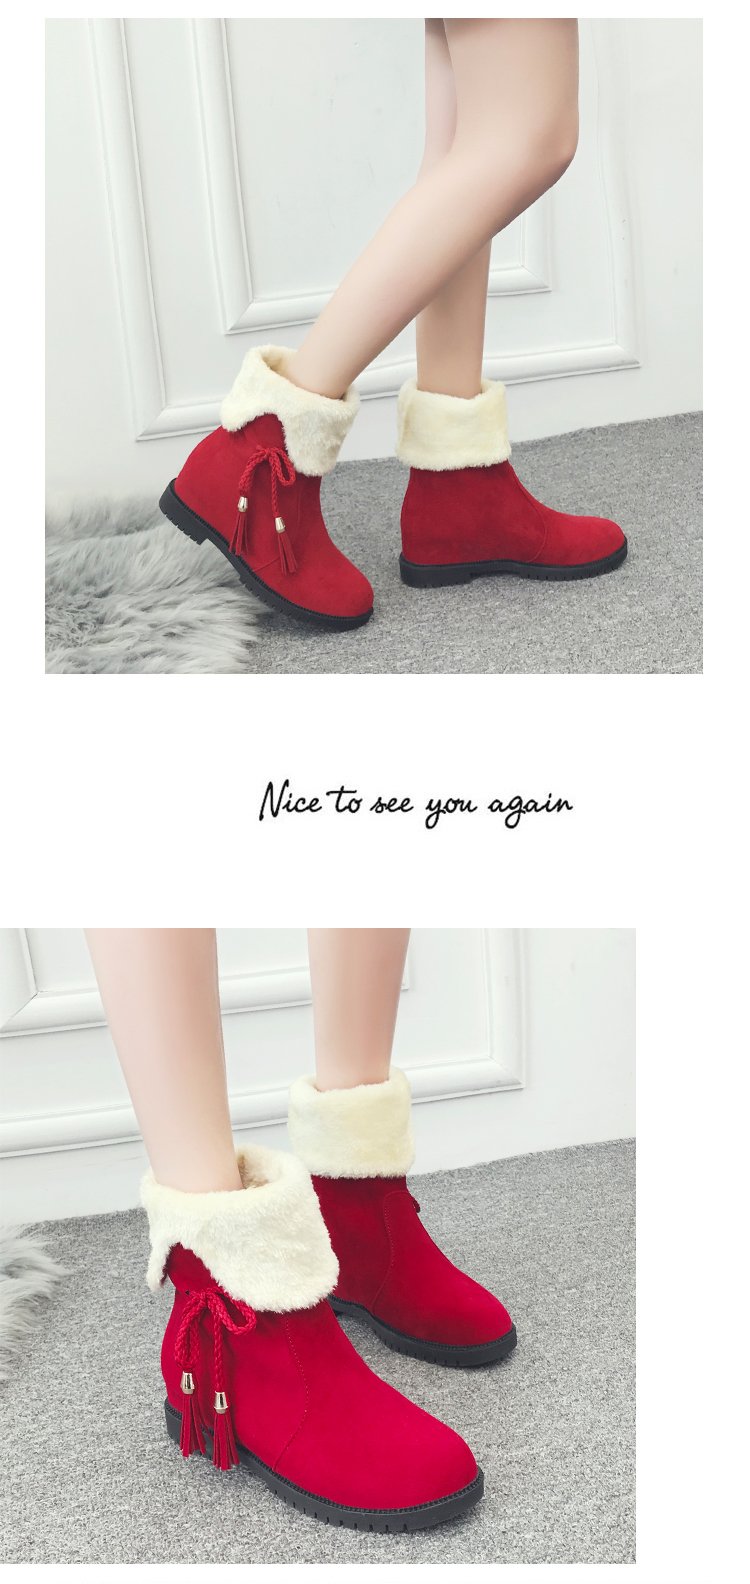 冬季新款韩版马丁靴女棉靴2017时尚休闲百搭低跟平底内增高短筒靴